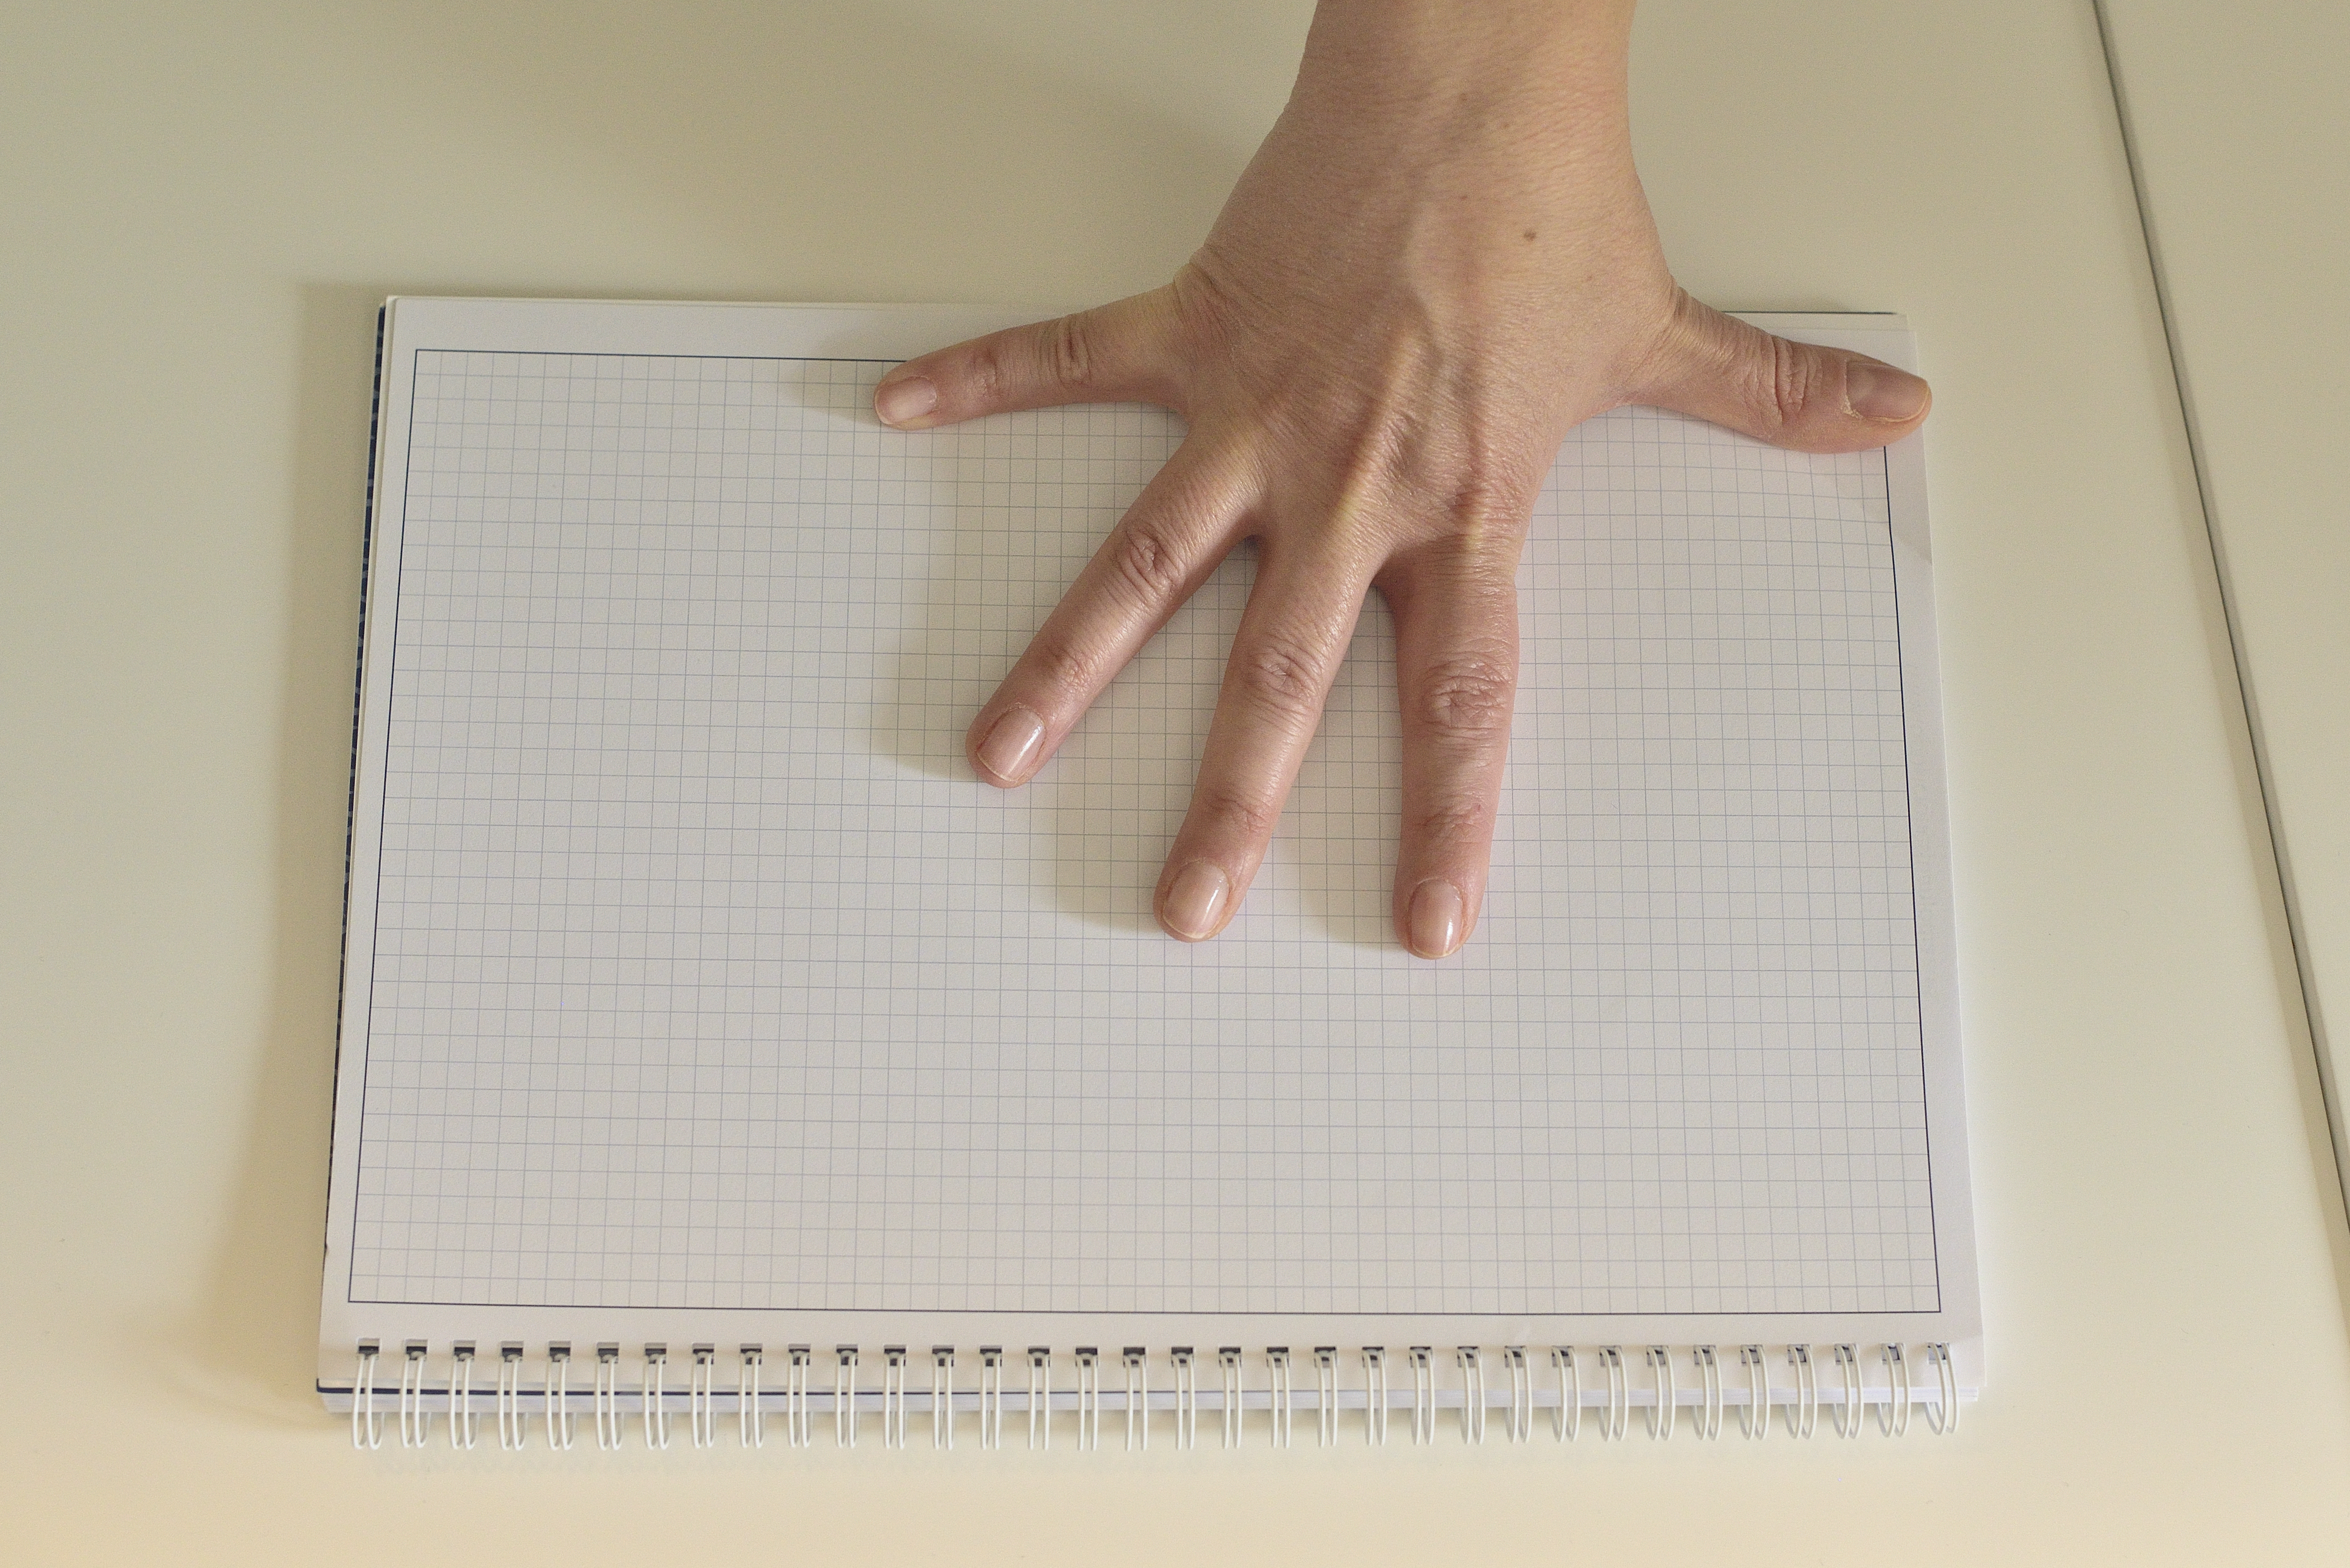 La imagen muestra una mano abierta en forma de palmo, que está midiendo un cuaderno que hay debajo